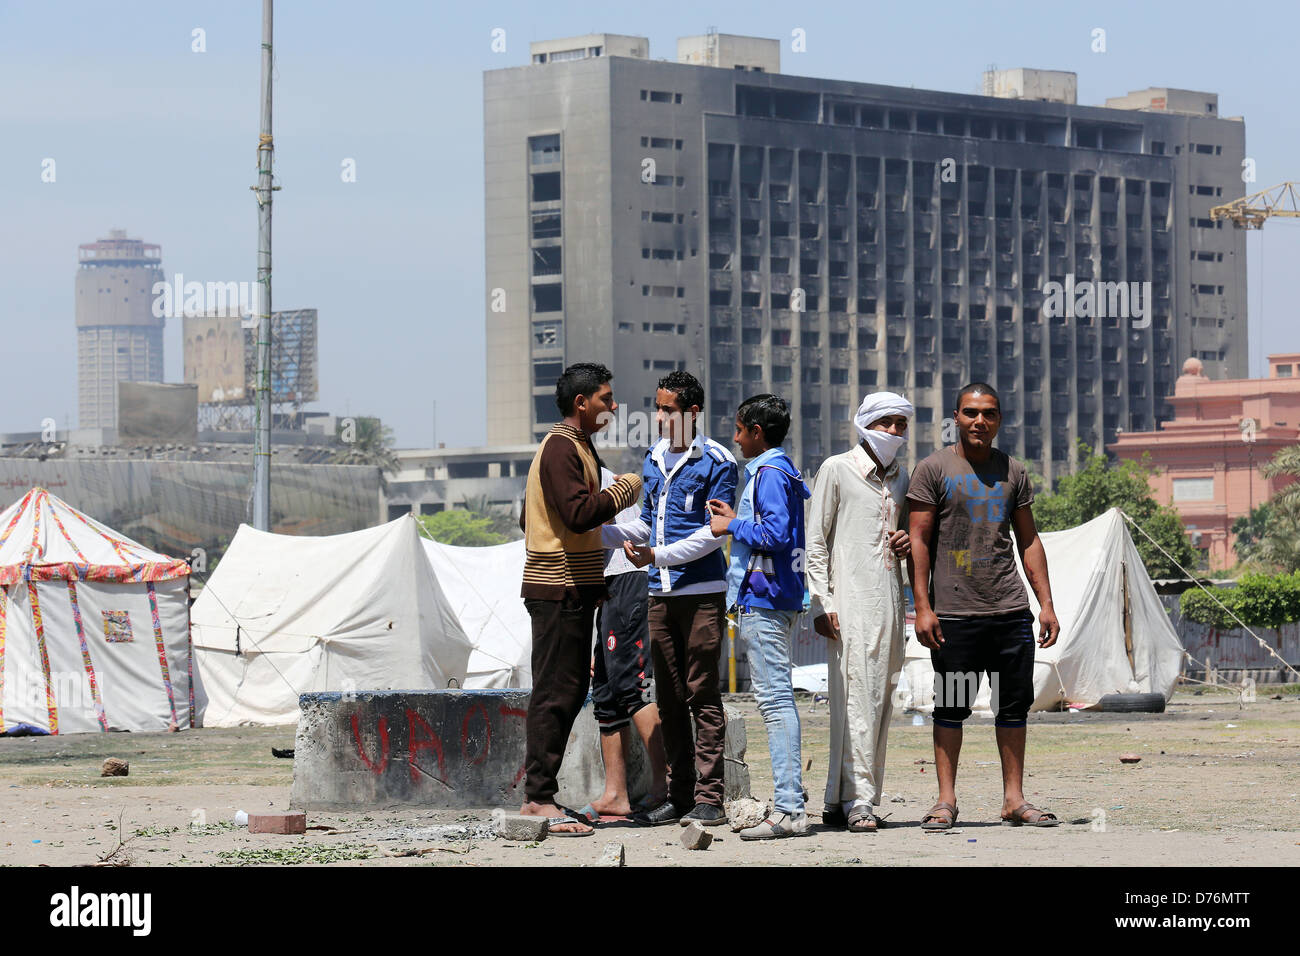 Le Caire, Égypte. Des tentes sur la place Tahrir. Dans l'arrière-plan le siège incendié du NPD, parti national démocratique Le Caire Banque D'Images